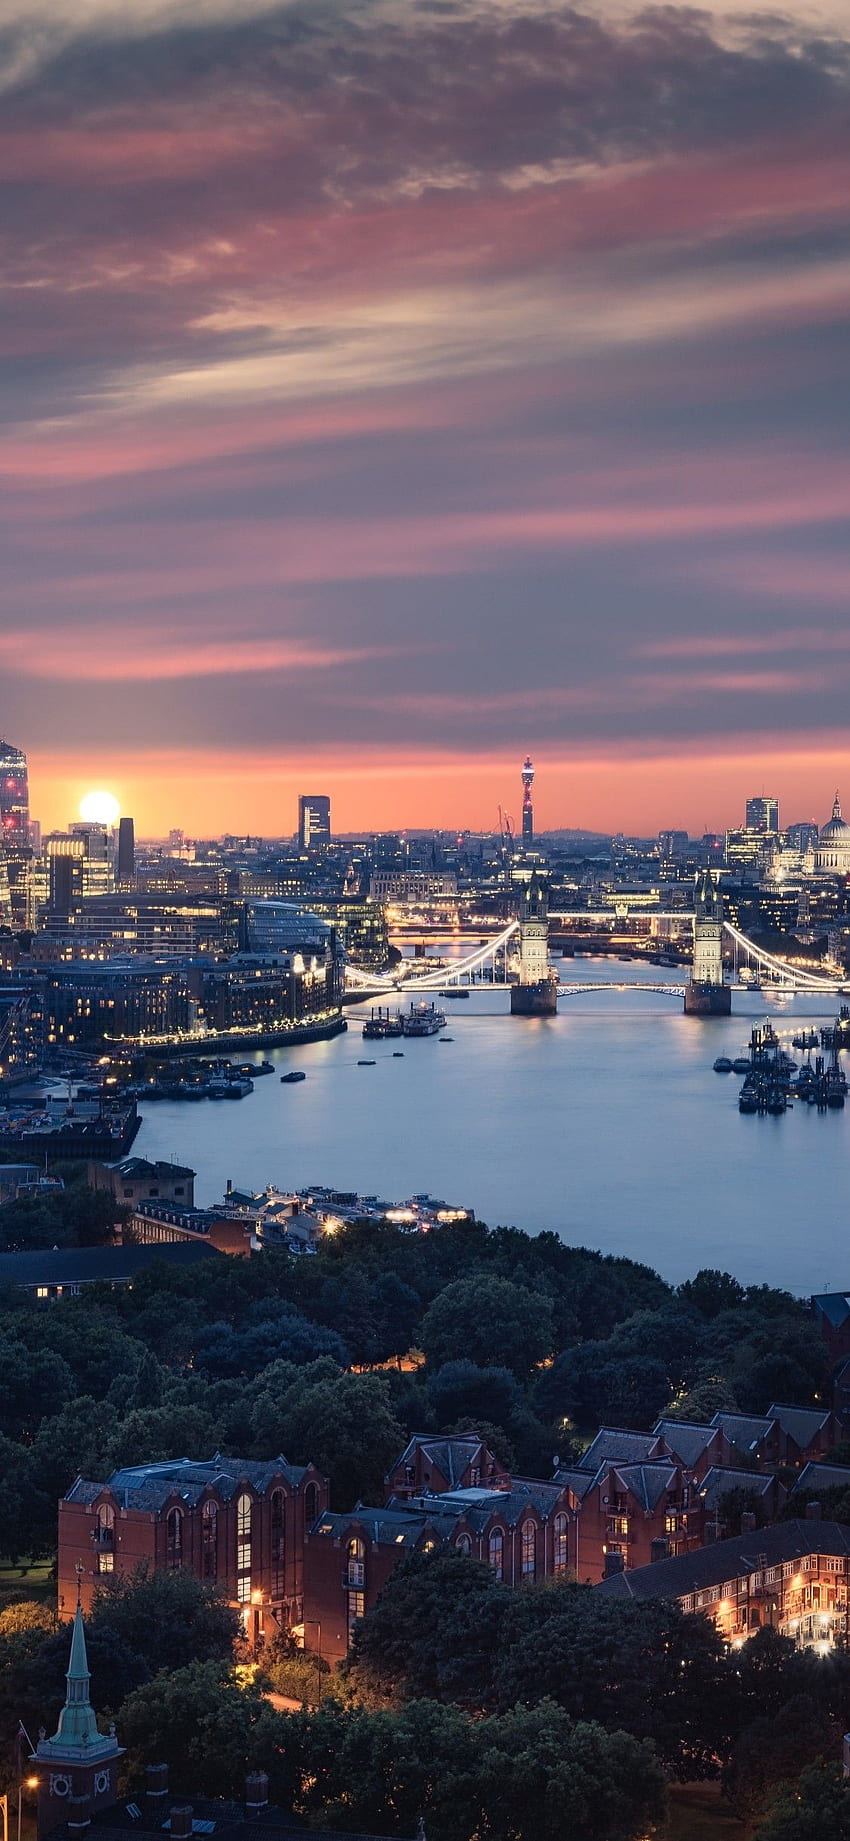 London skyline background HD wallpapers | Pxfuel